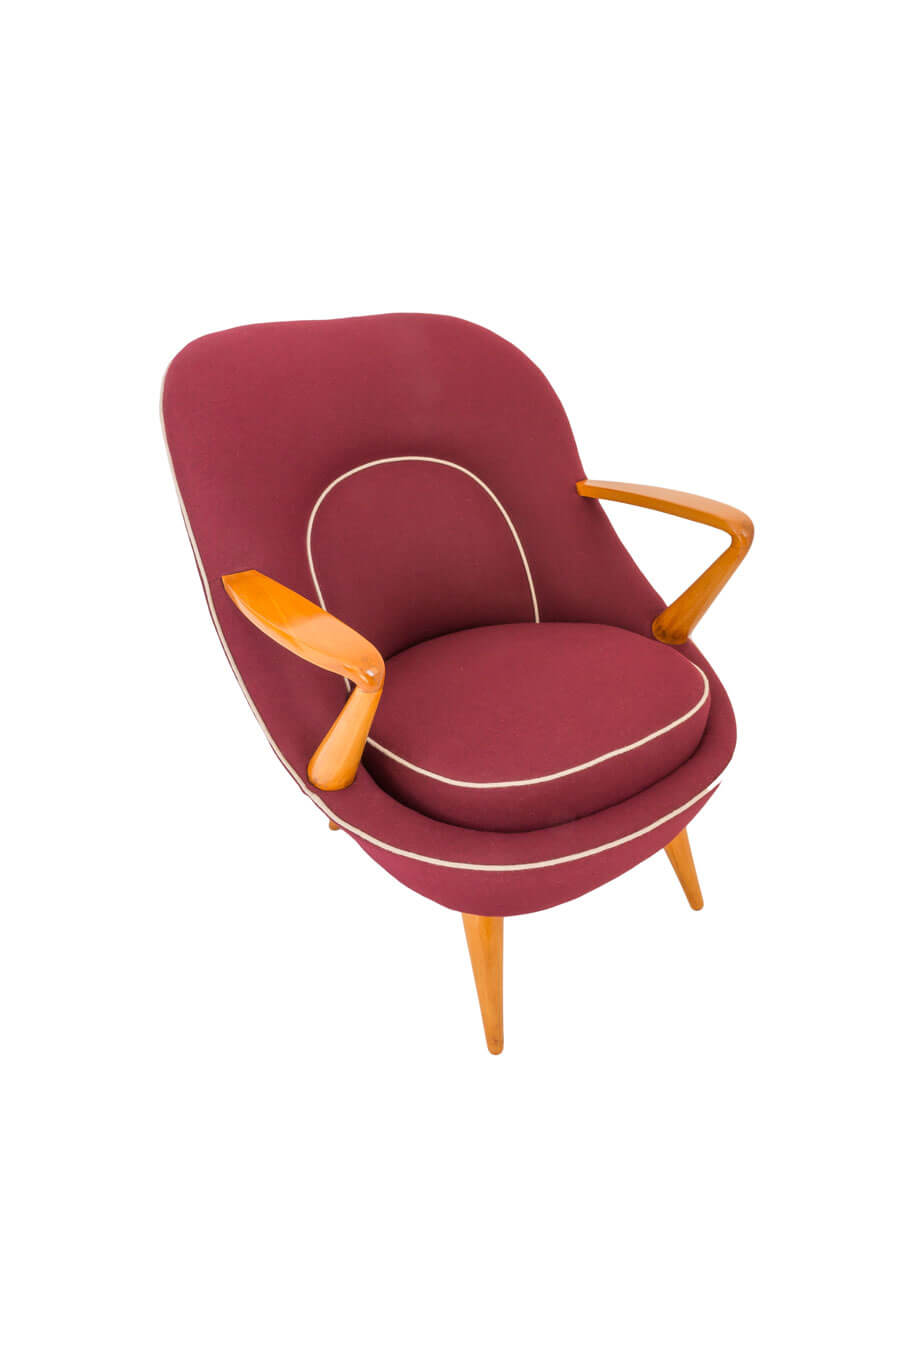 armchair-345-designed-by-k-racinowski-j-jedrachowicz